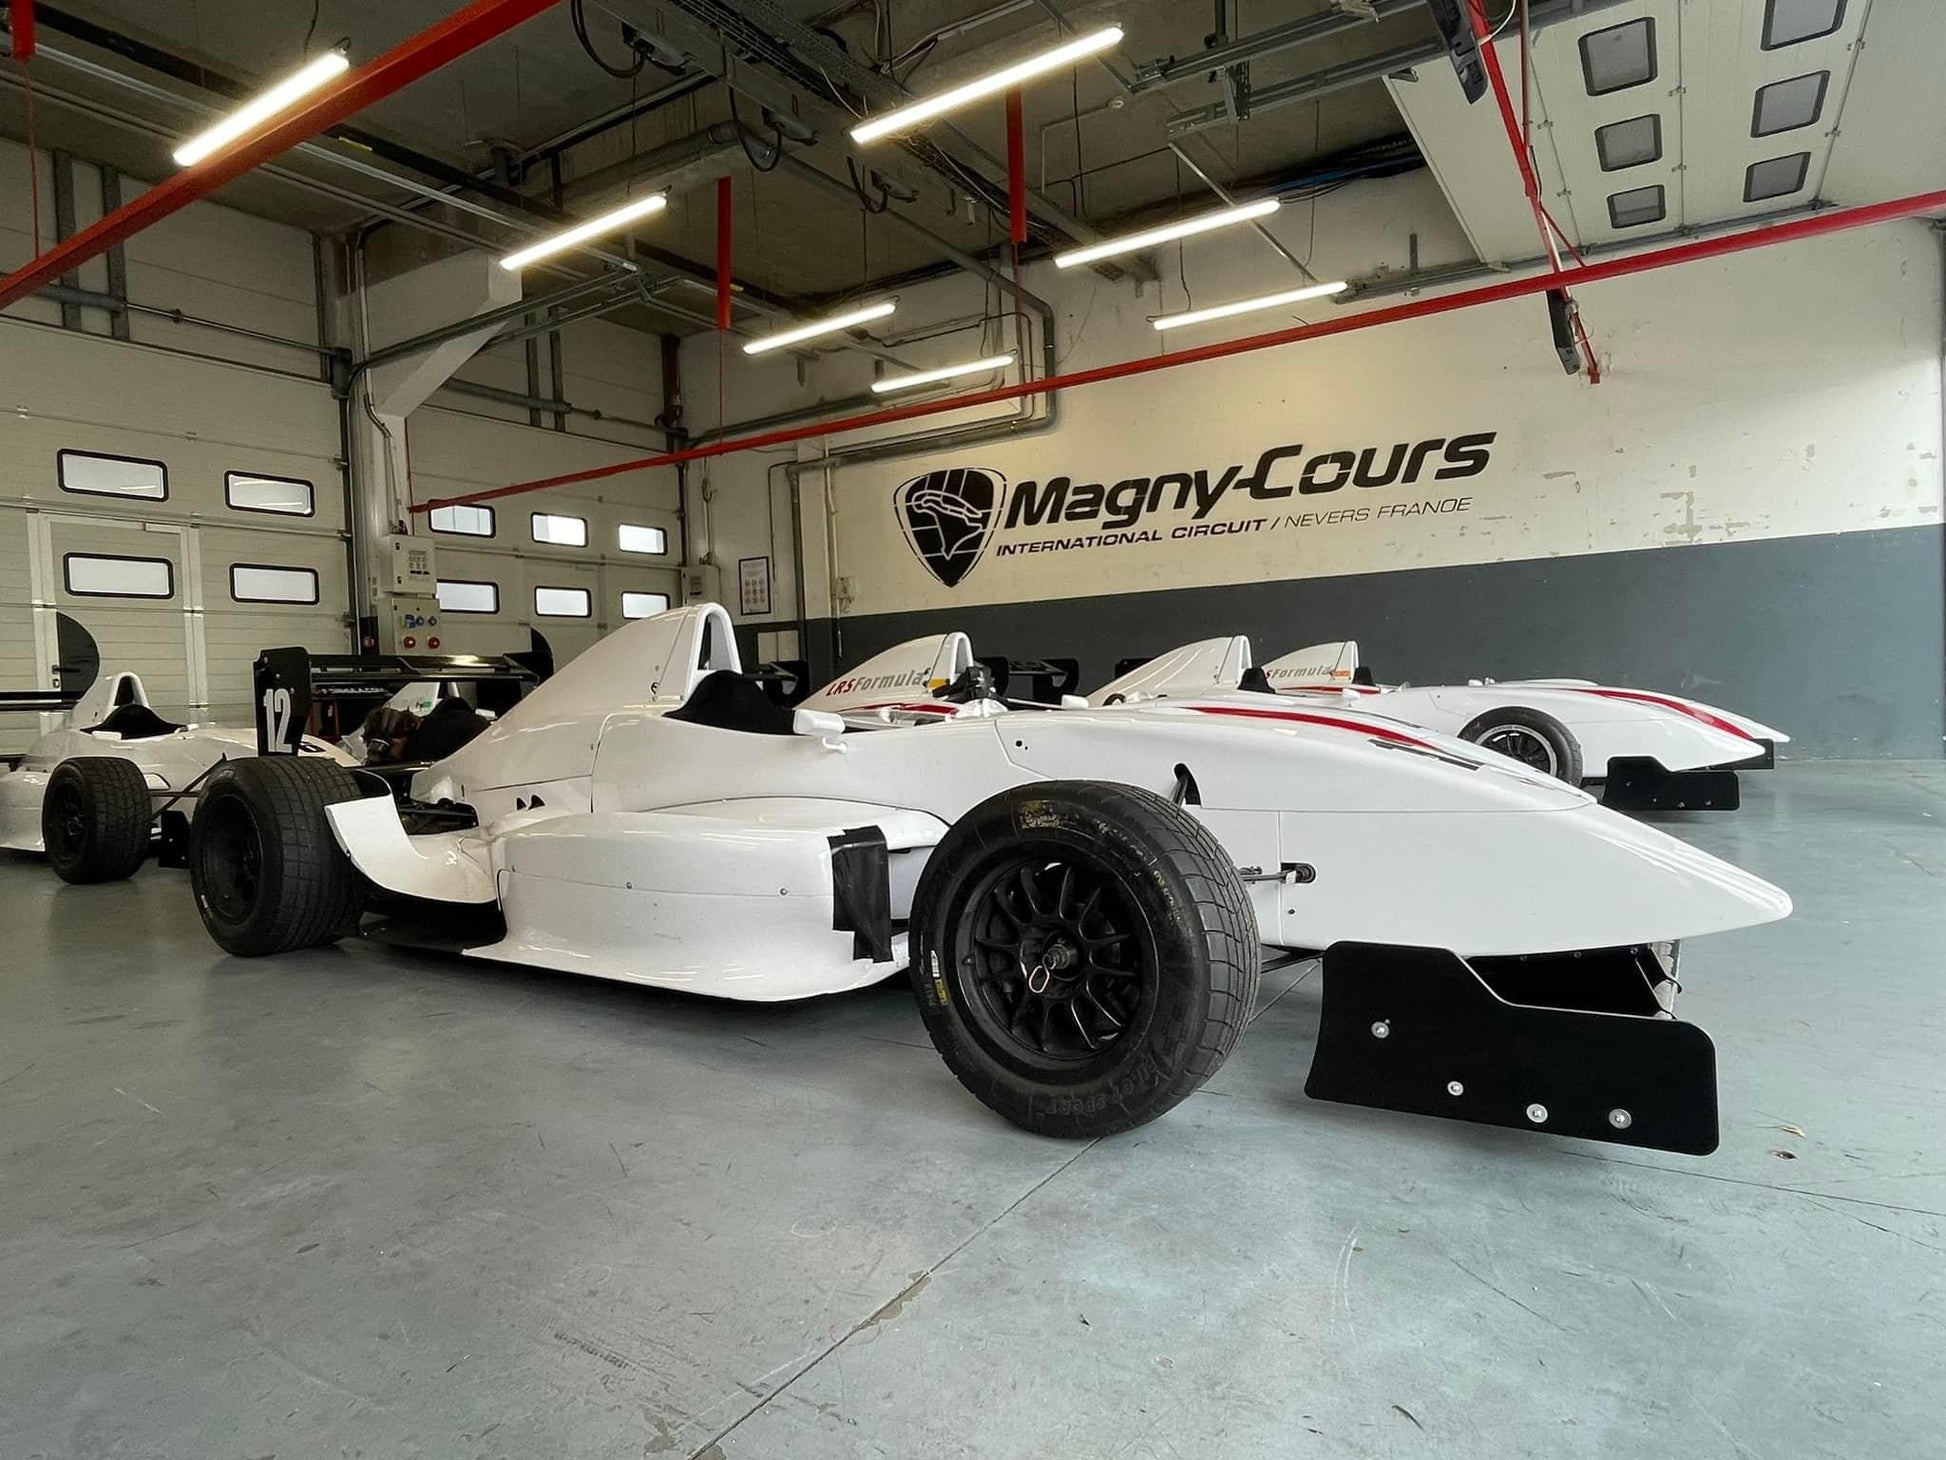 Effectuez un stage de pilotage en Formule Renault sur le Circuit de Nevers Magny-Cours avec Mercury Silver. Une vraie voiture de course sur un magnifique circuit de F1 !